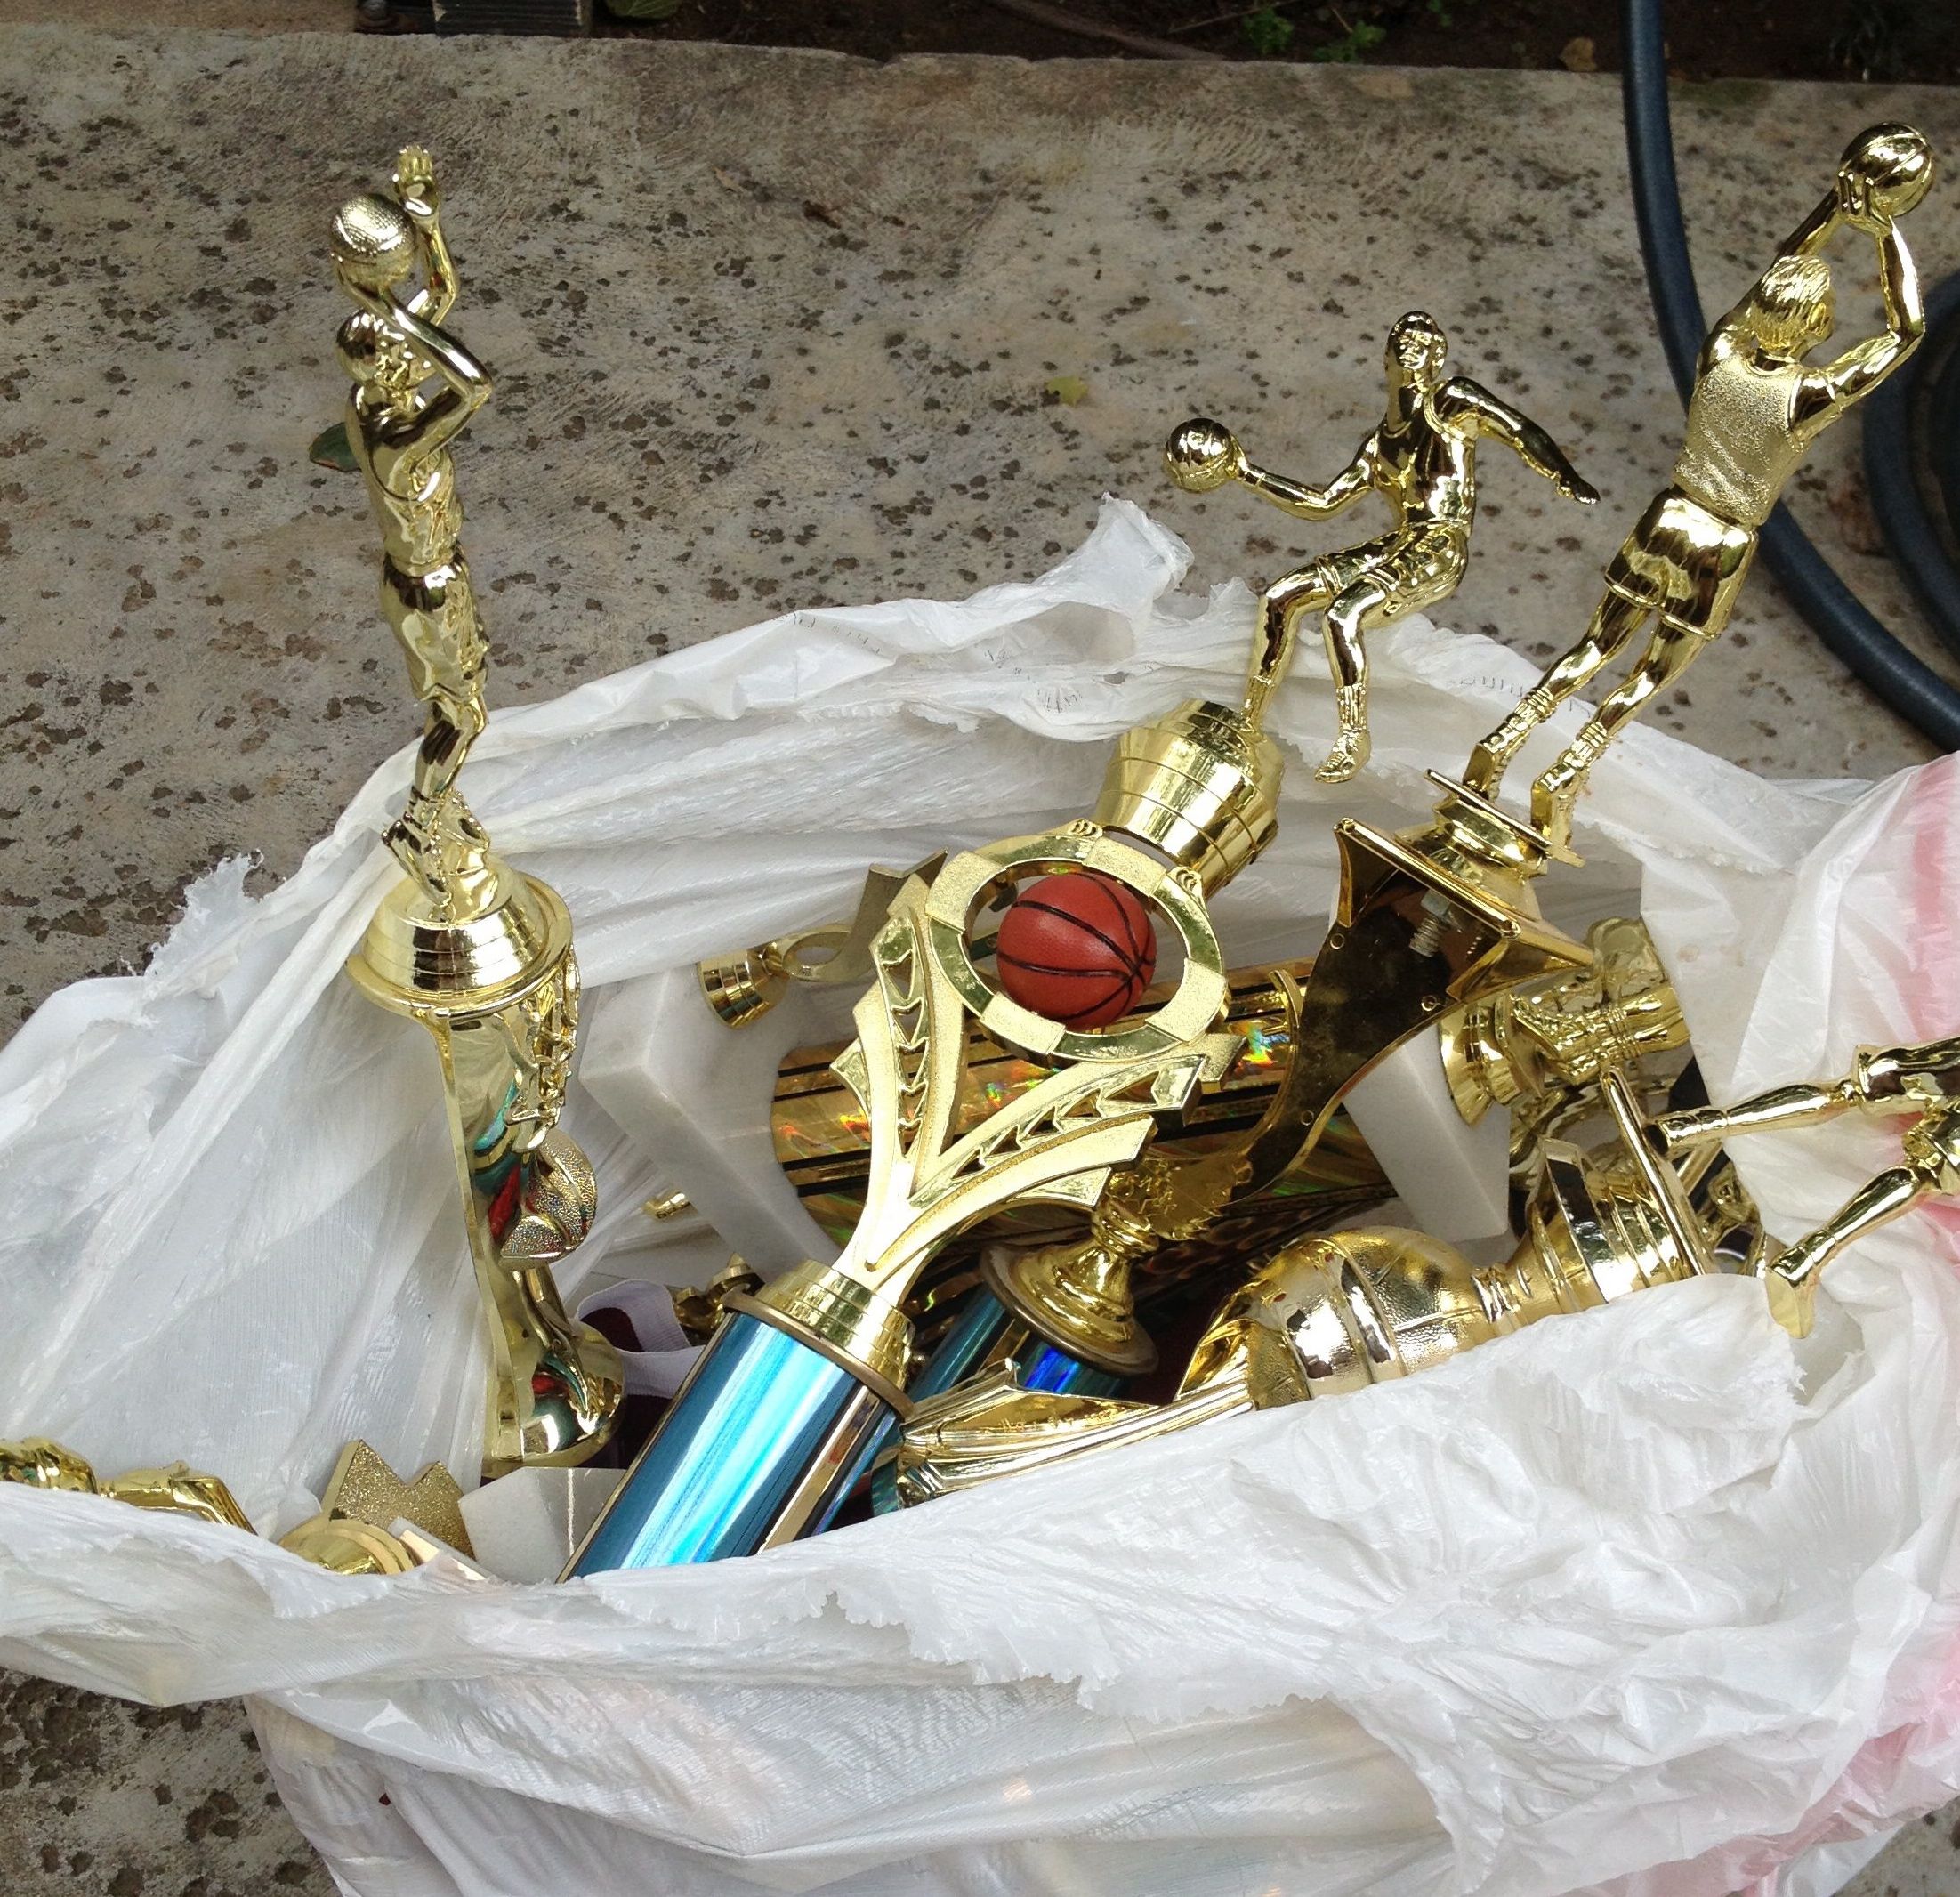 Trophies-in-the-trash1.jpg